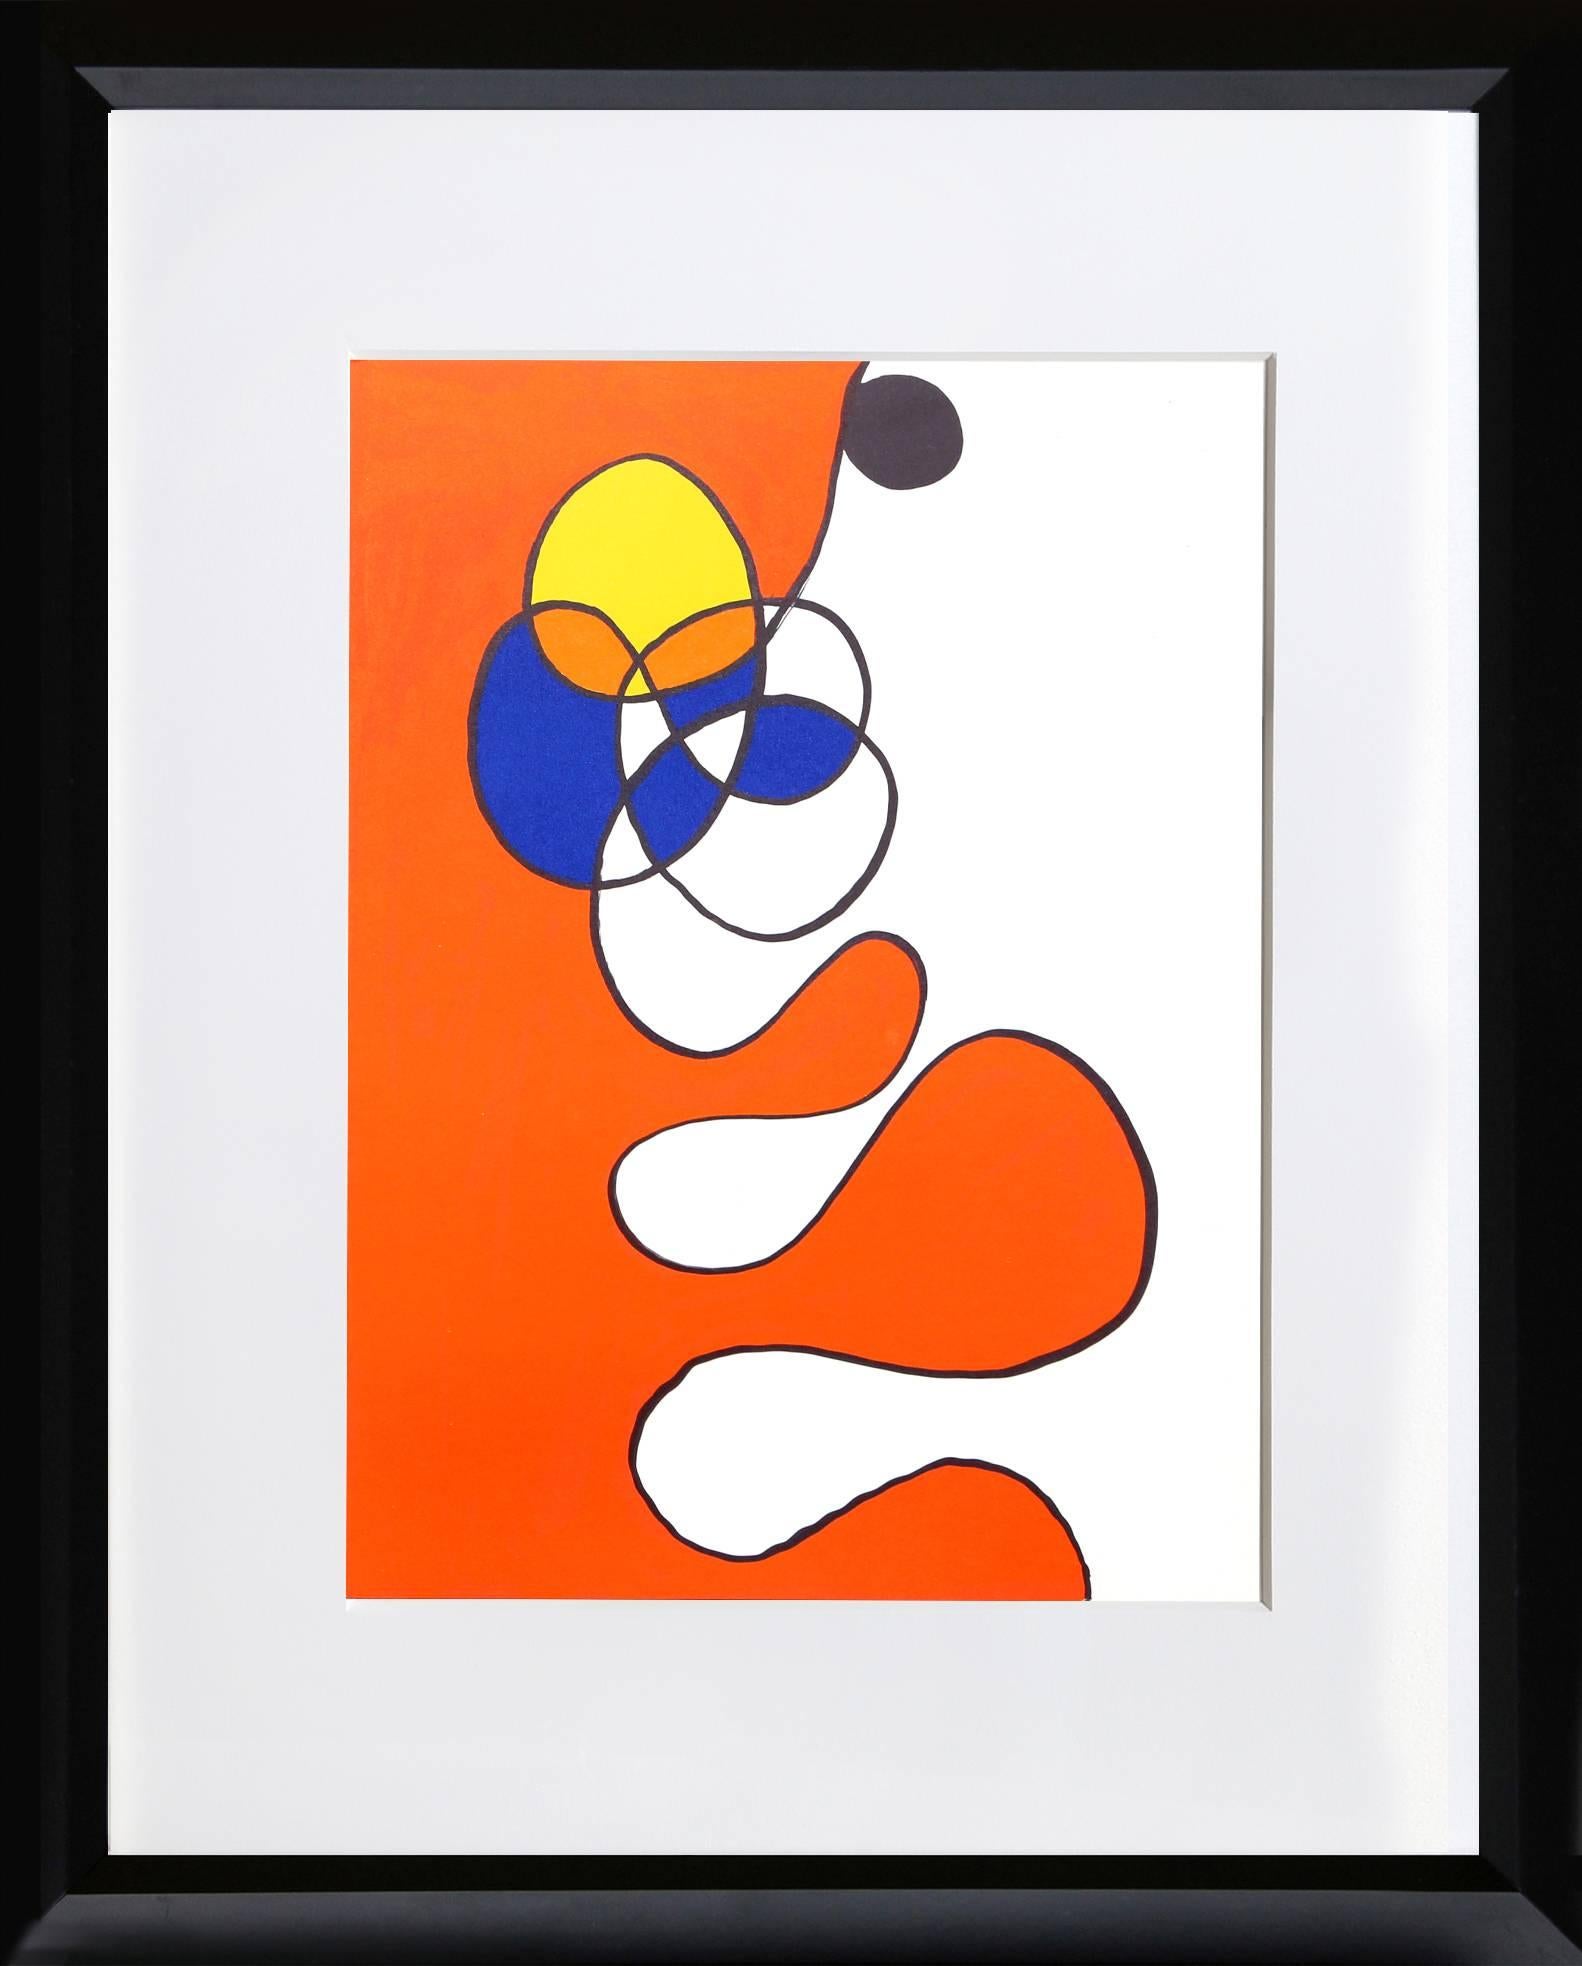 Eine Original-Lithografie von Alexander Calder mit bunten Wirbeln aus Derriere Le Miroir, Oktober 1968

Künstler: Alexander Calder, Amerikaner (1898 - 1976)
Titel: Auszug III aus Derriere Le Miroir
Jahr: 1968
Medium: Lithographie
Größe: 15 x 11 Zoll